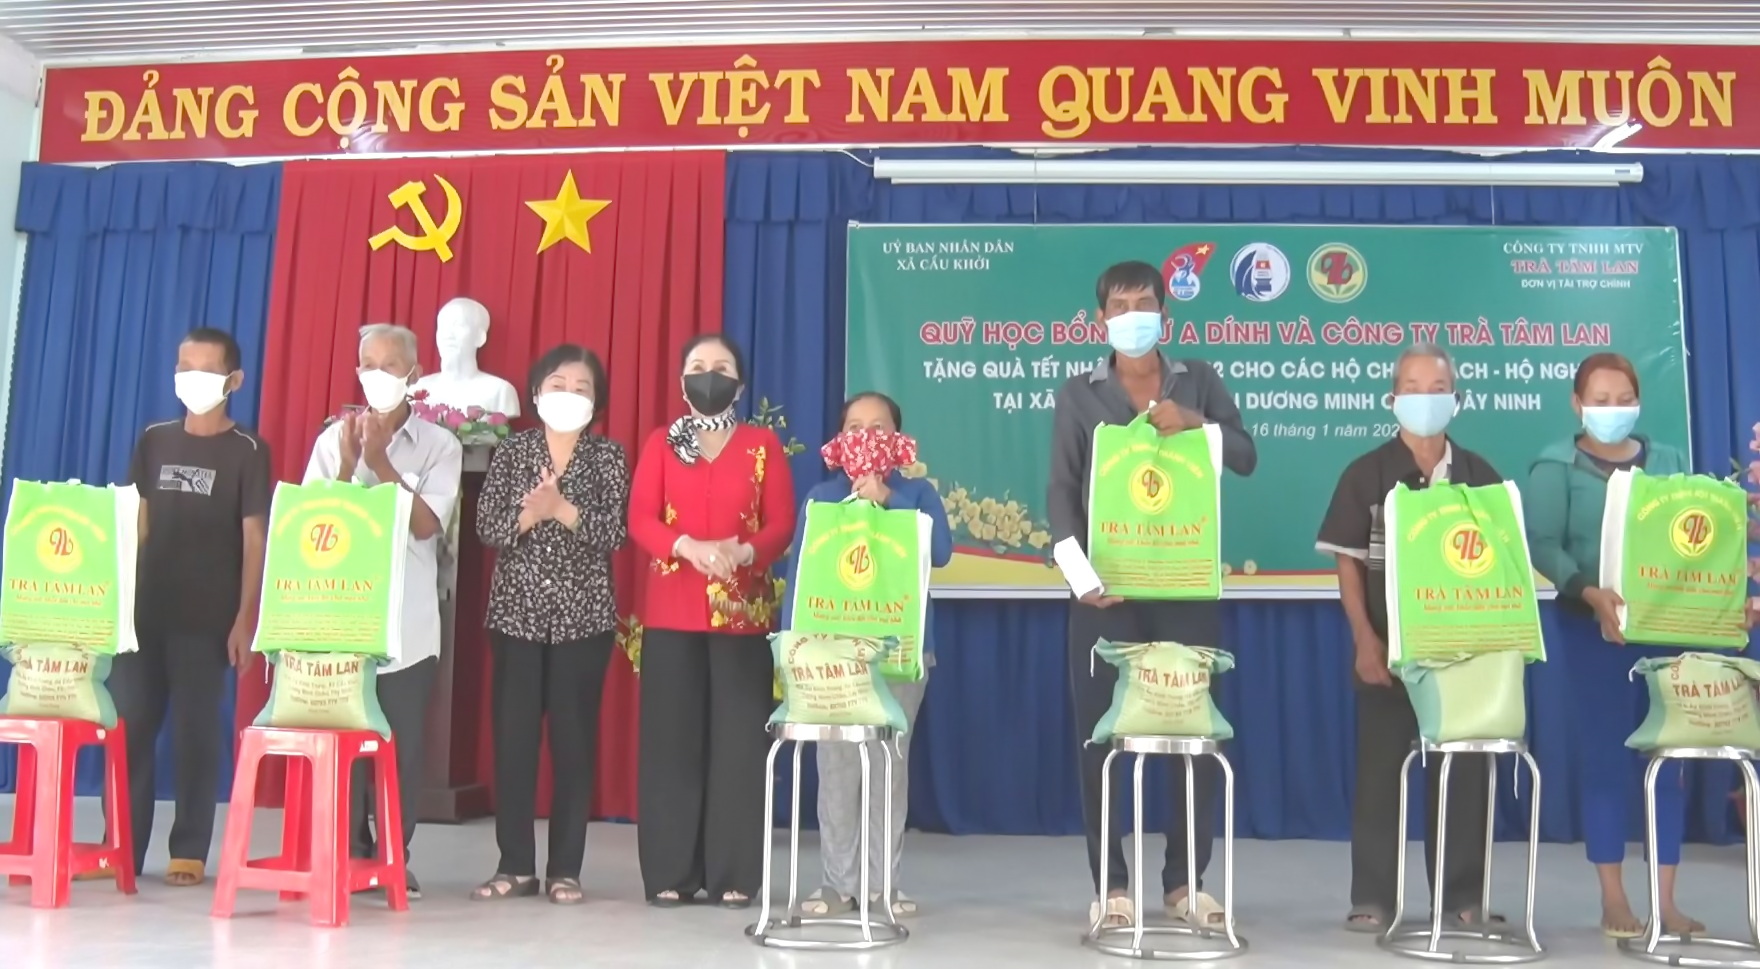 Điểm báo in Tây Ninh ngày 17.01.2022